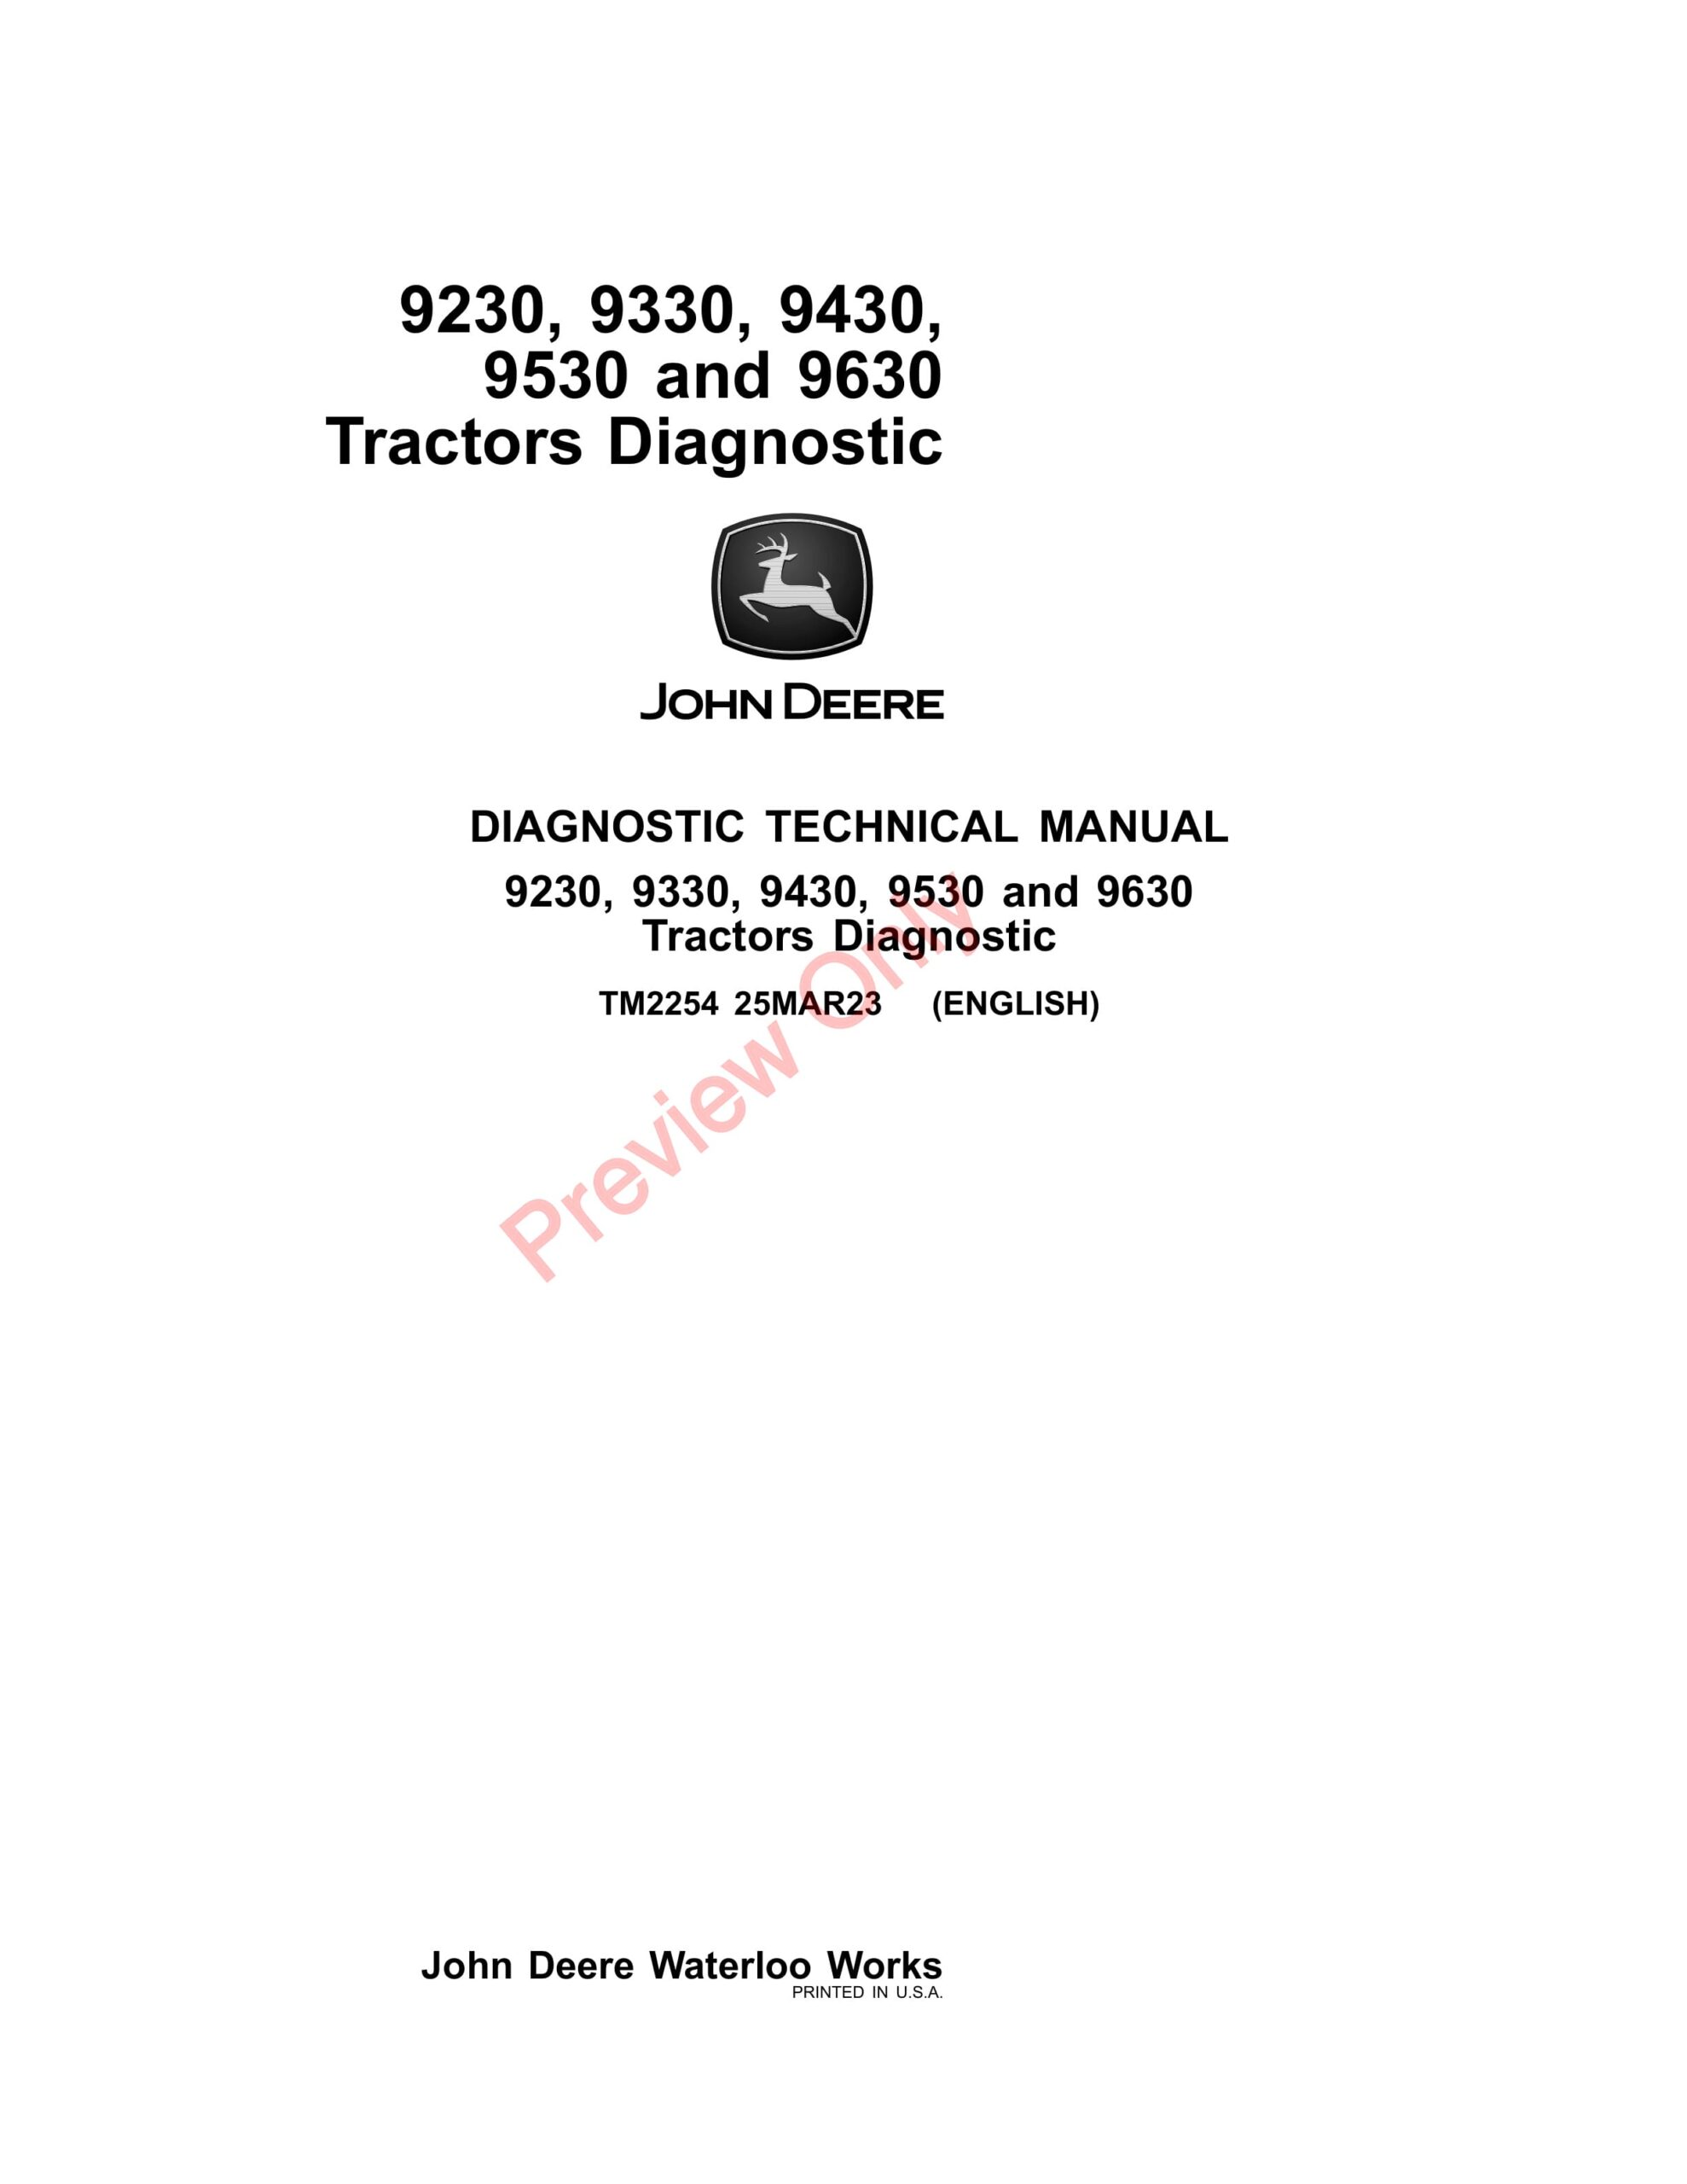 John Deere 9230, 9330, 9430, 9530 and 9630 Tractors Diagnostic Technical Manual TM2254 25MAR23-1